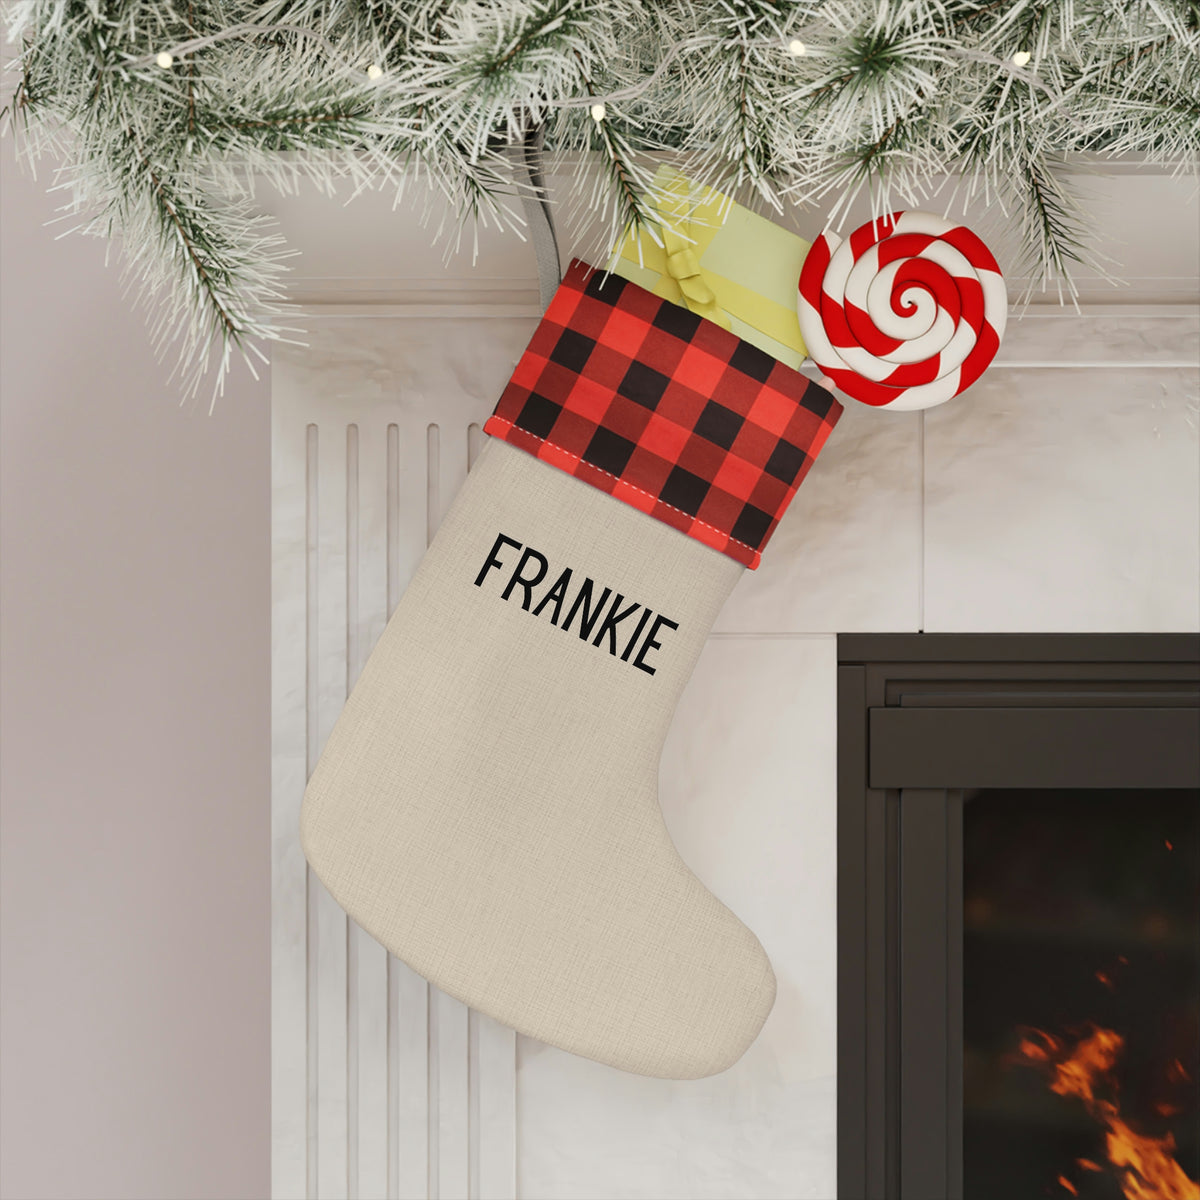 frankie stocking